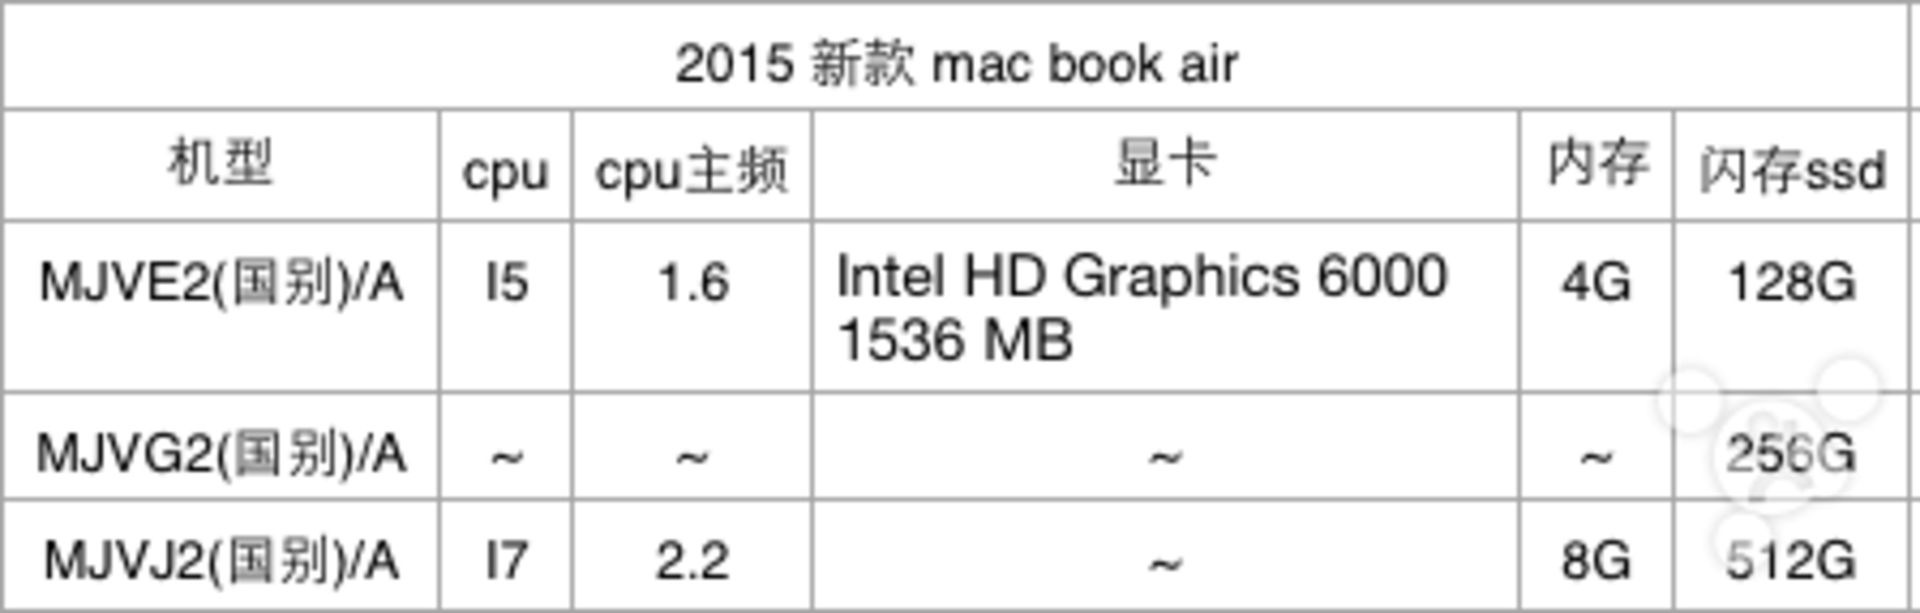 macbook-air-chart